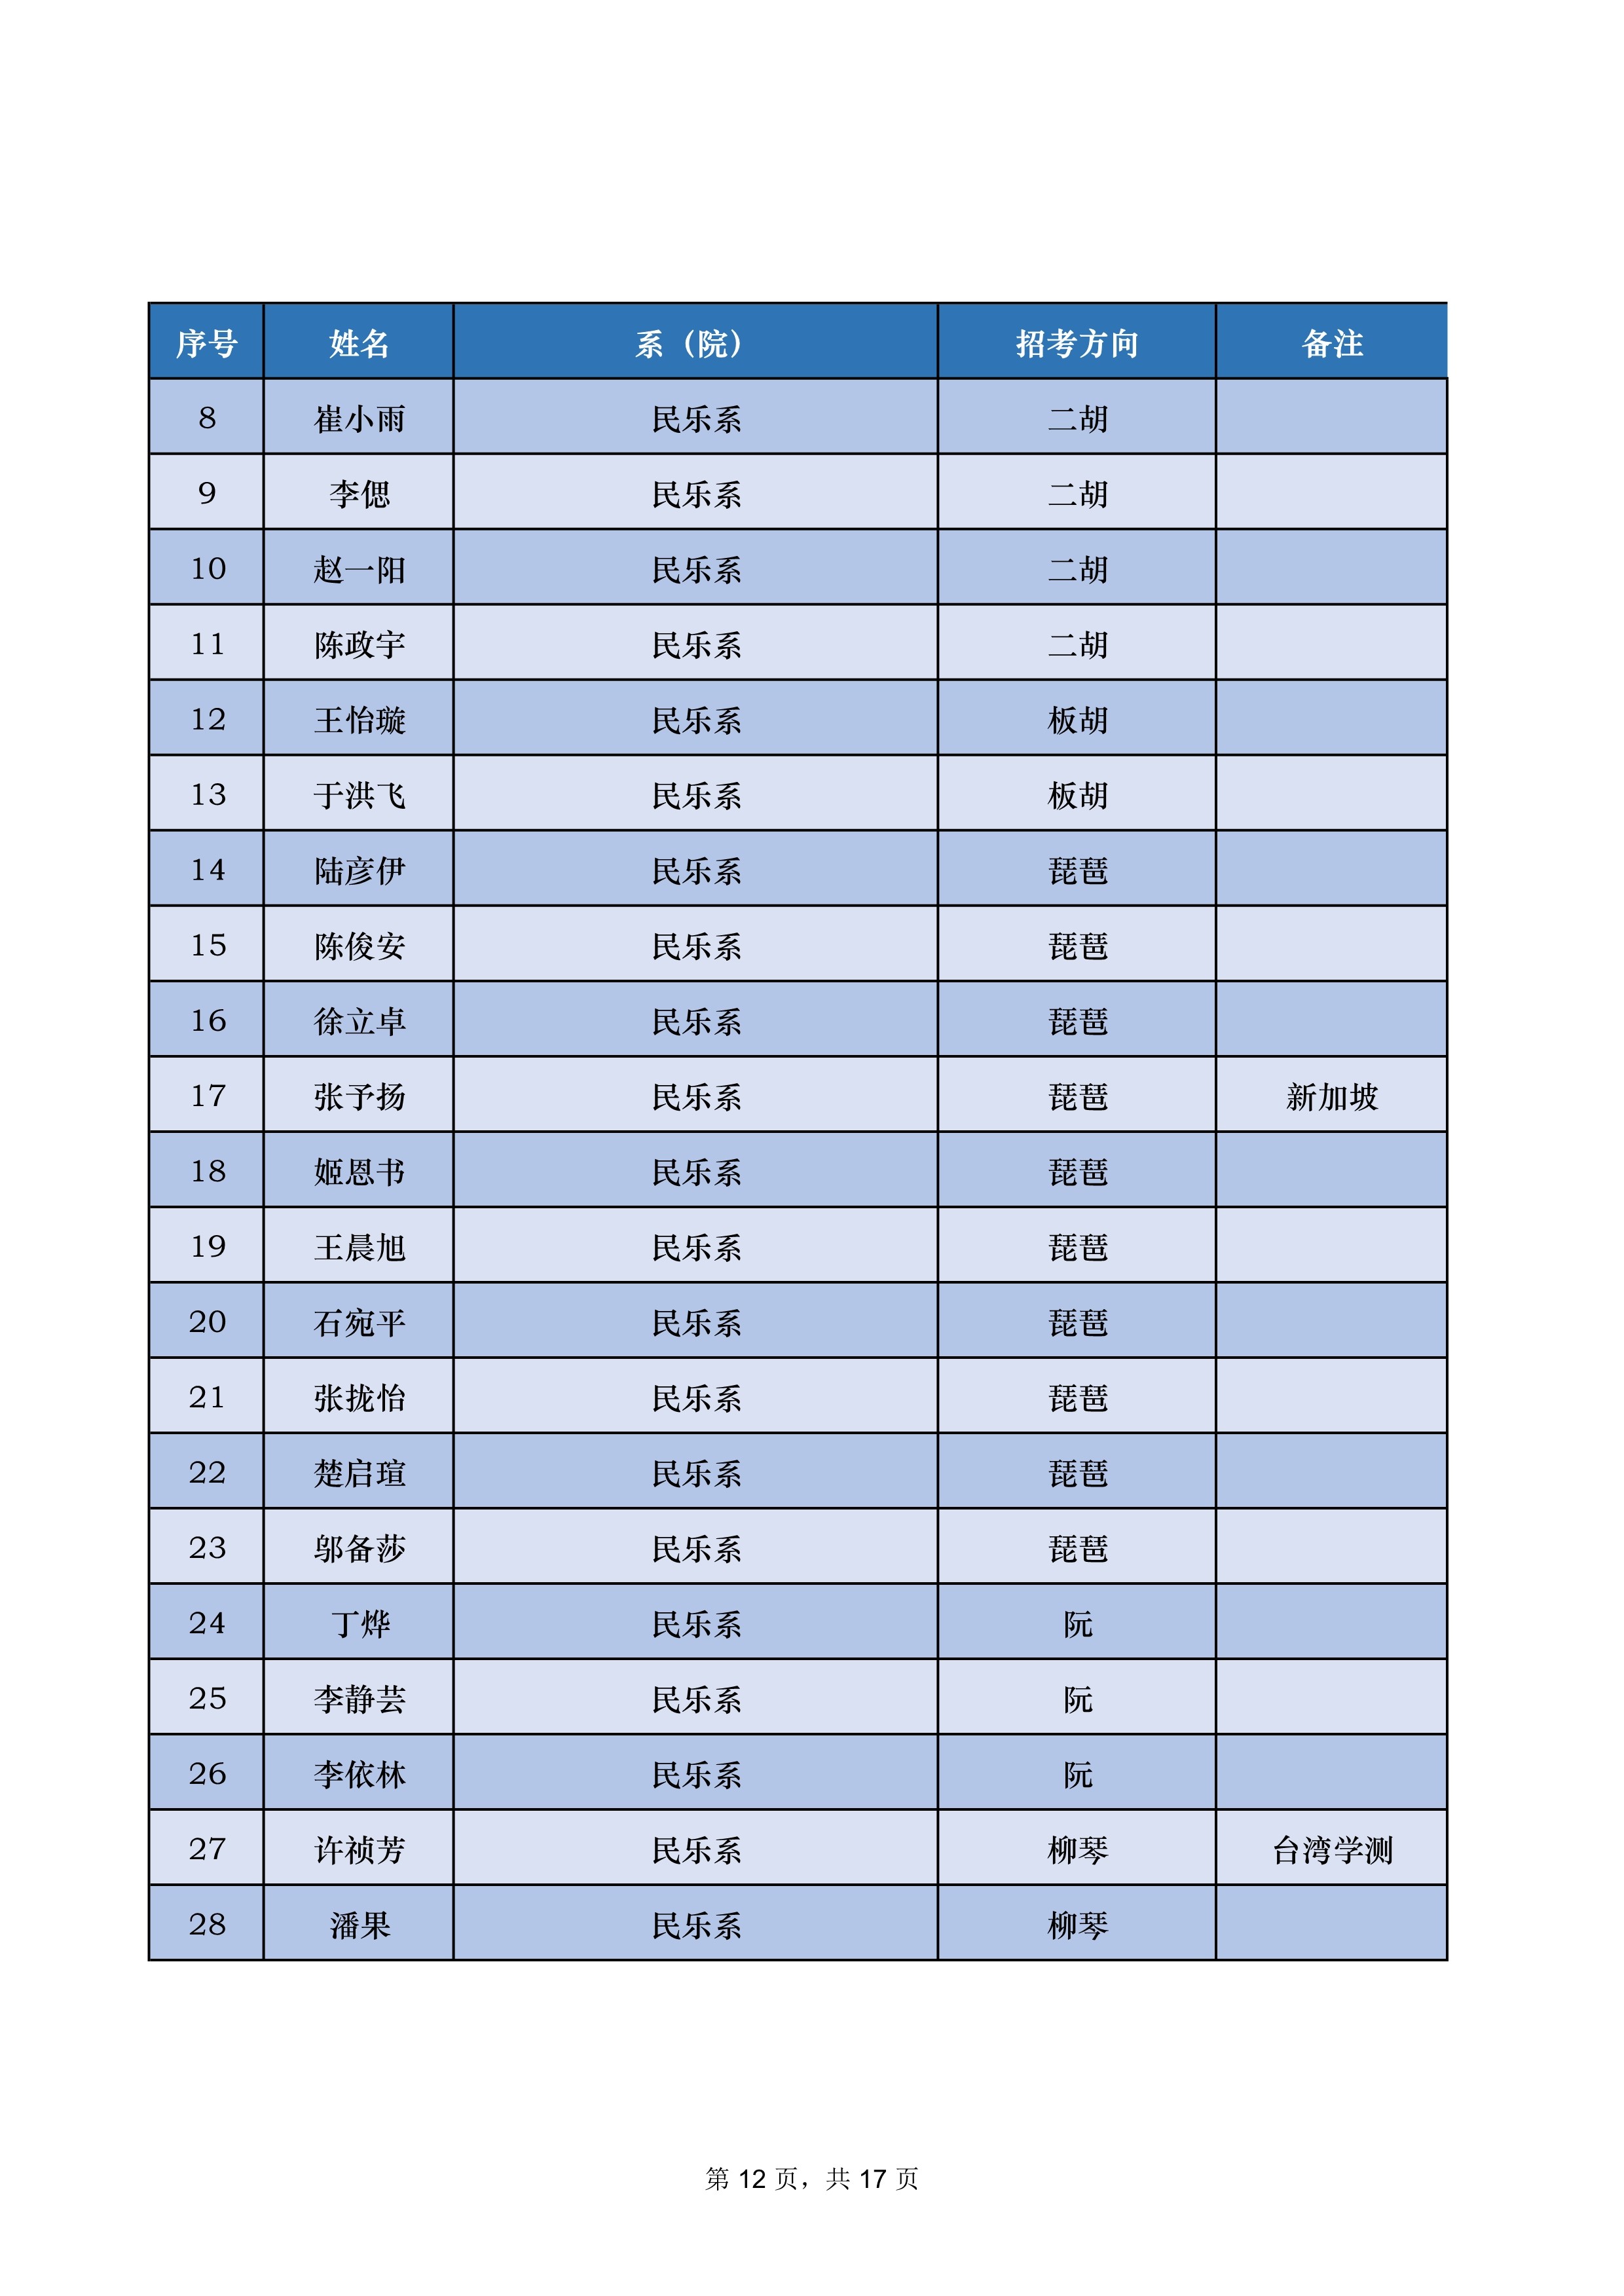 中央音乐学院2022年本科招生录取名单【不含上海考生和香港中学文凭考生】_12.jpg